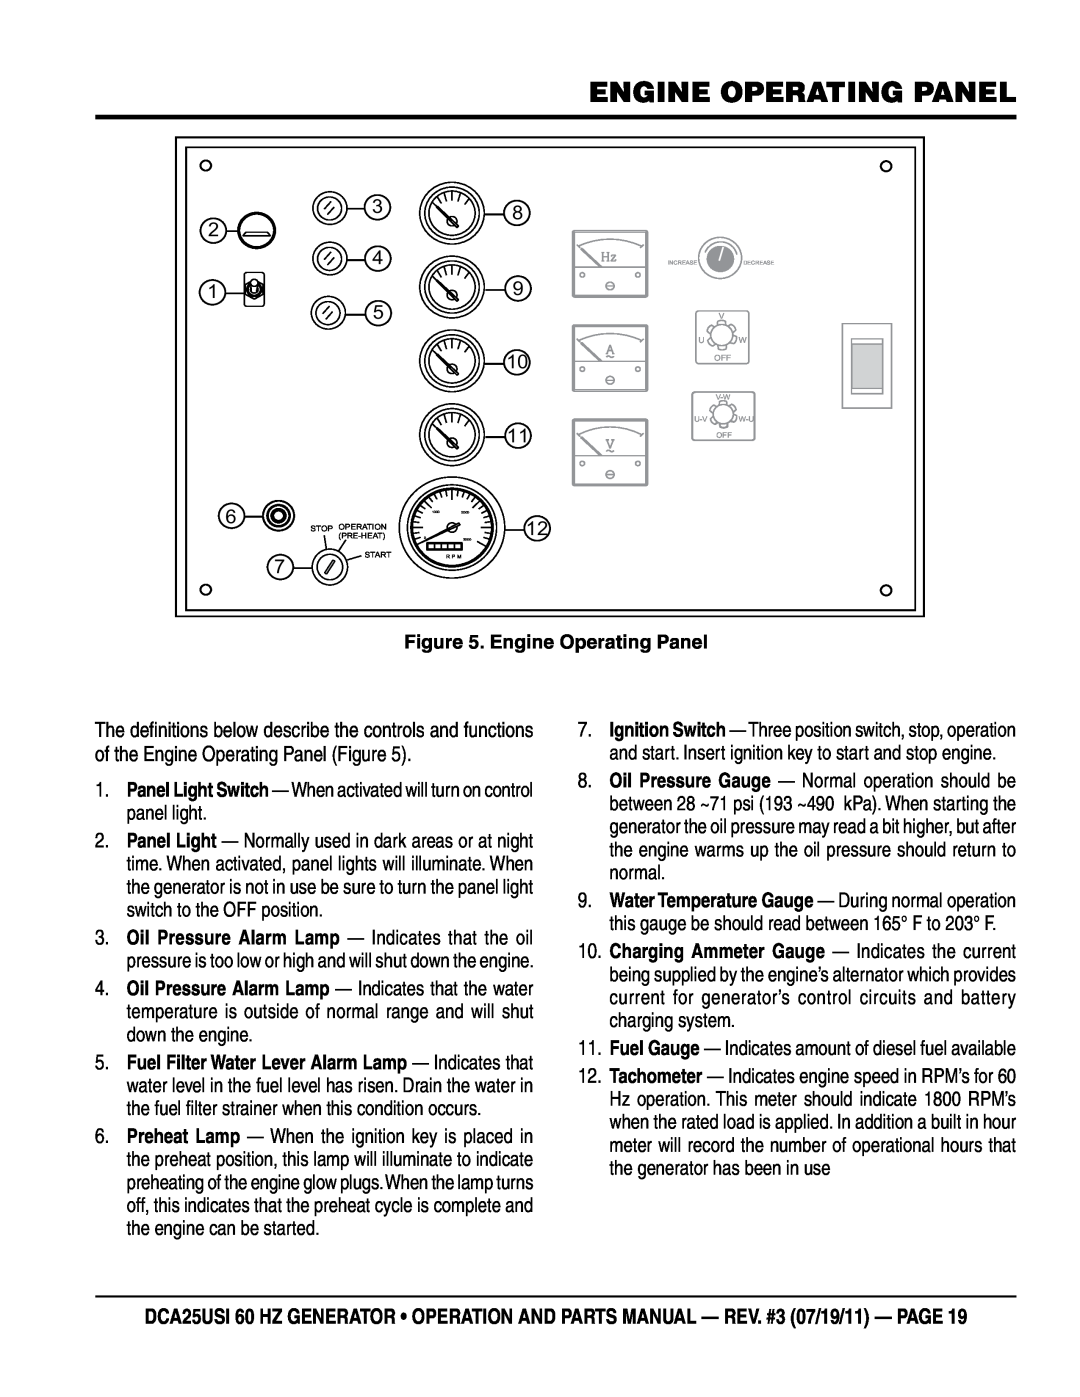 Multiquip DCA25USI manual Engine Operating Panel 